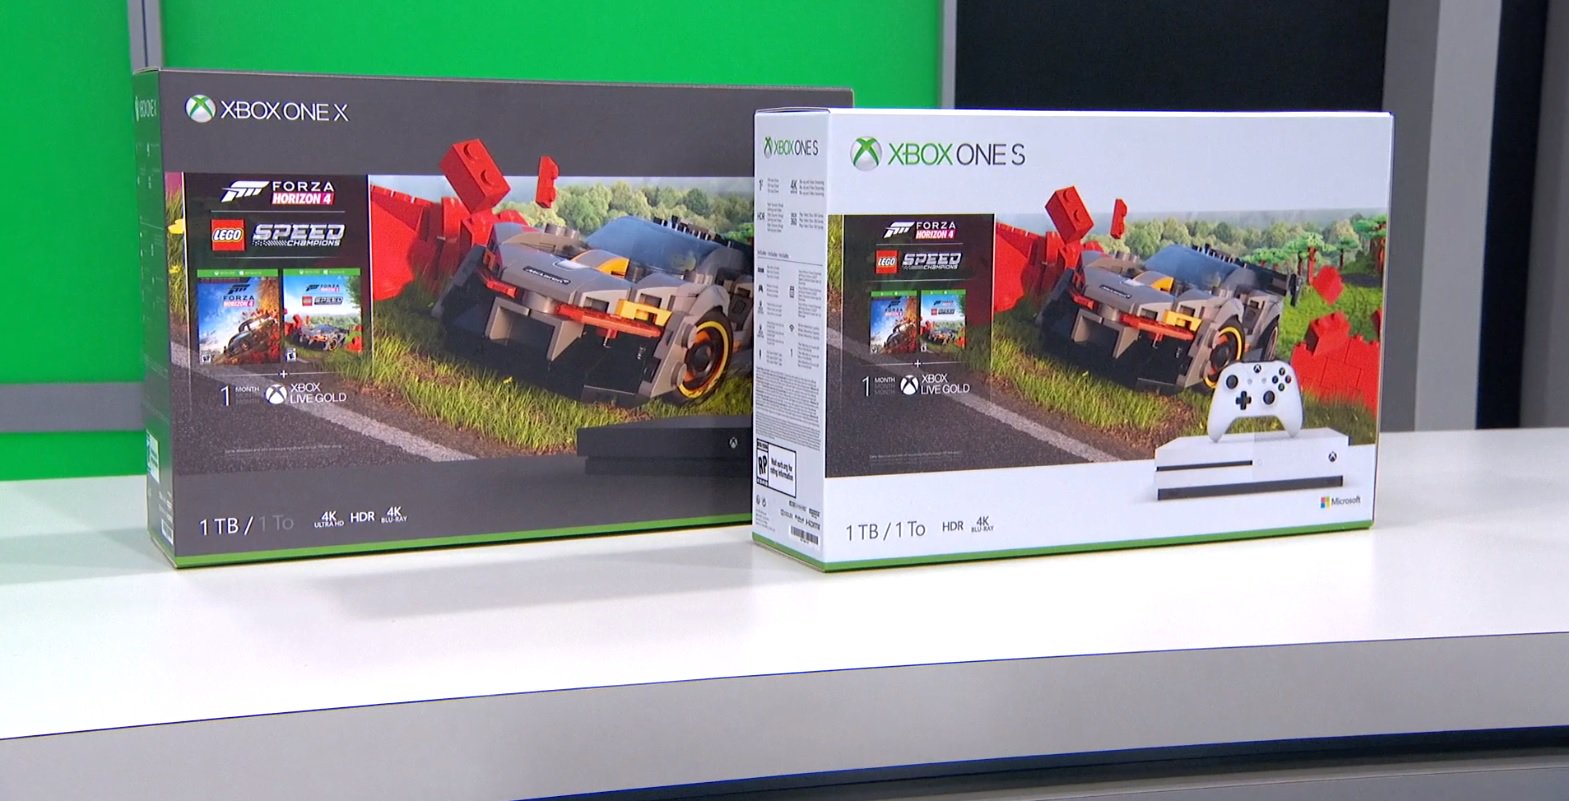 Anda bisa melakukan jauh lebih buruk daripada bundel Forza Horizon 4 + LEGO Forza Xbox ini